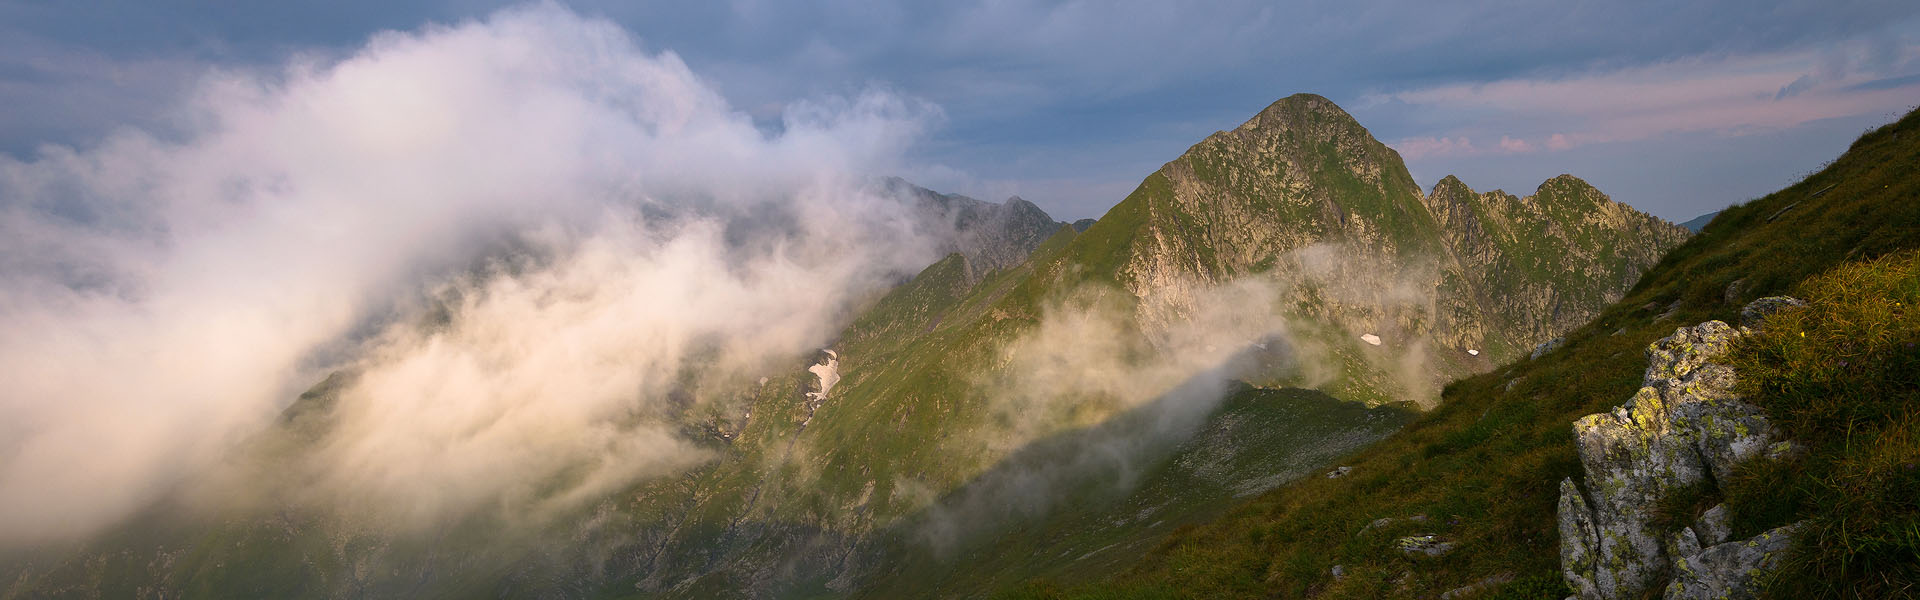 Munții Făgăraș - banner